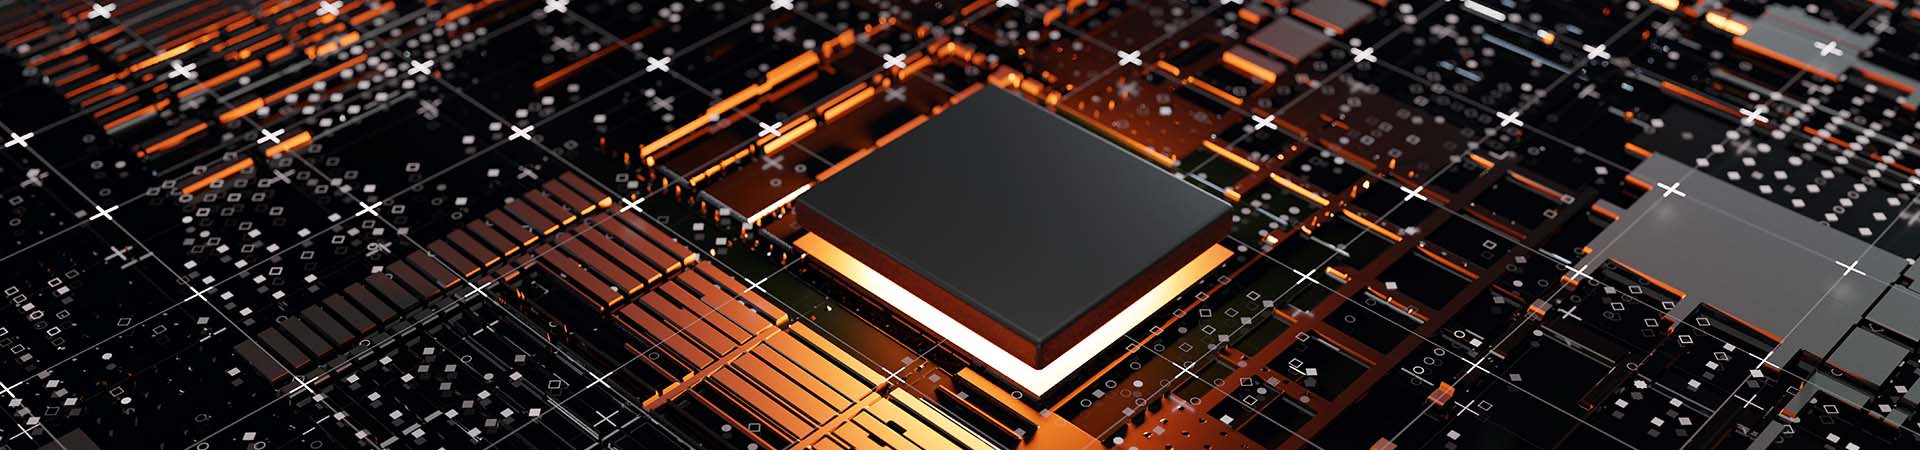 Samsung SDI Improves PCB Development